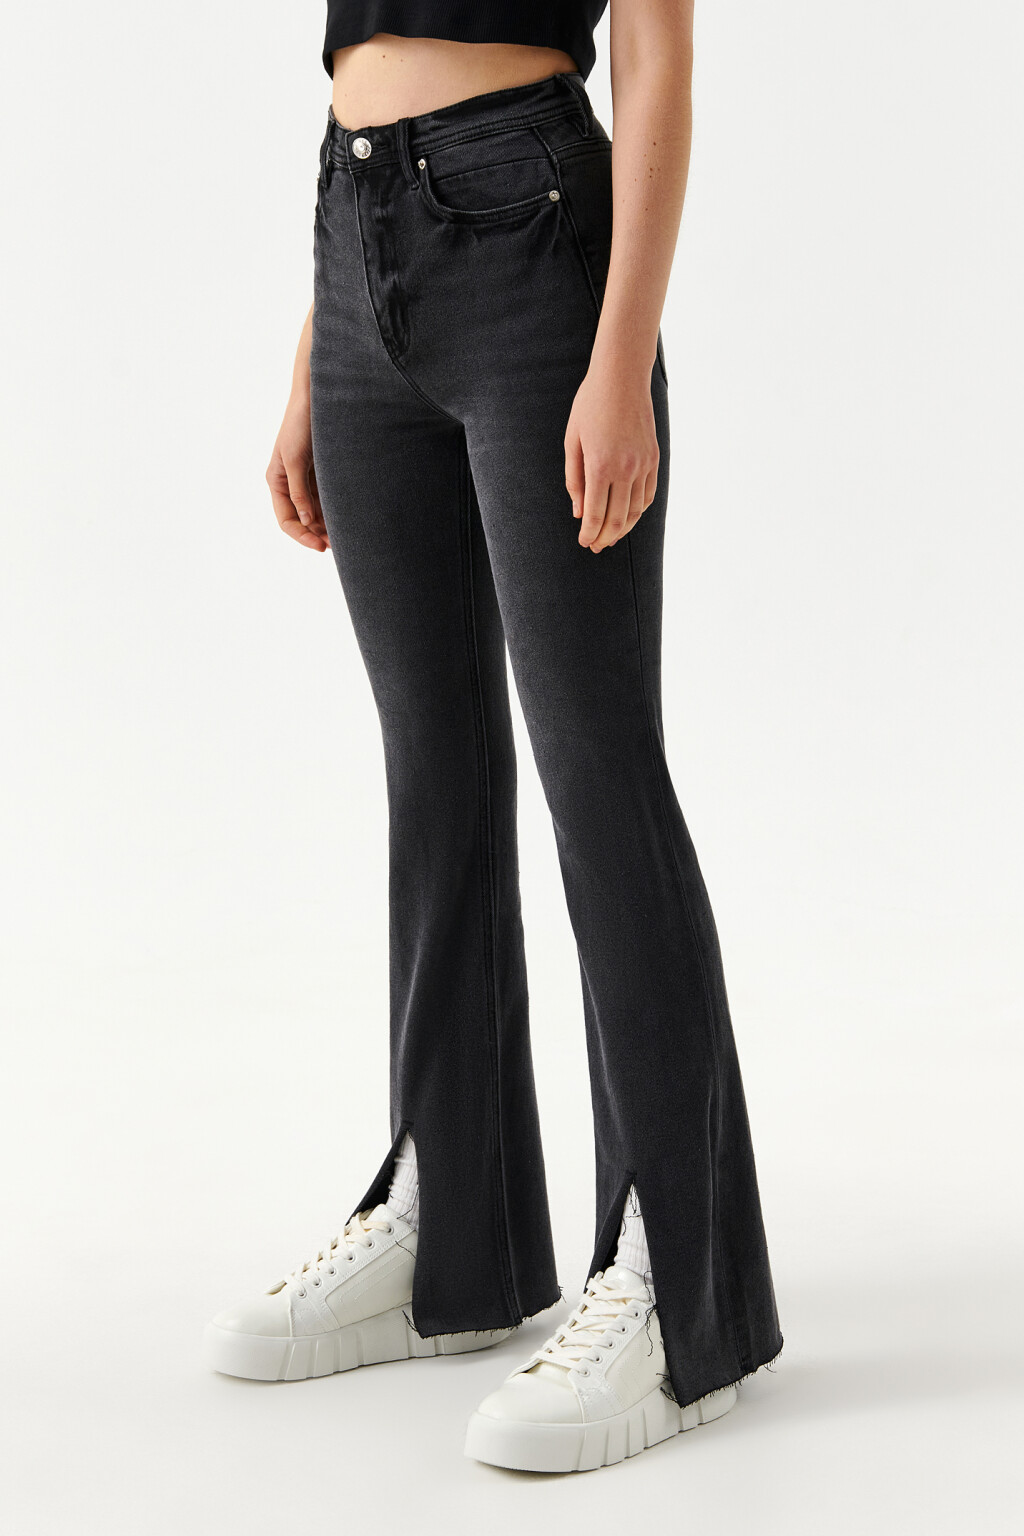 джинсы женские клеш с разрезом